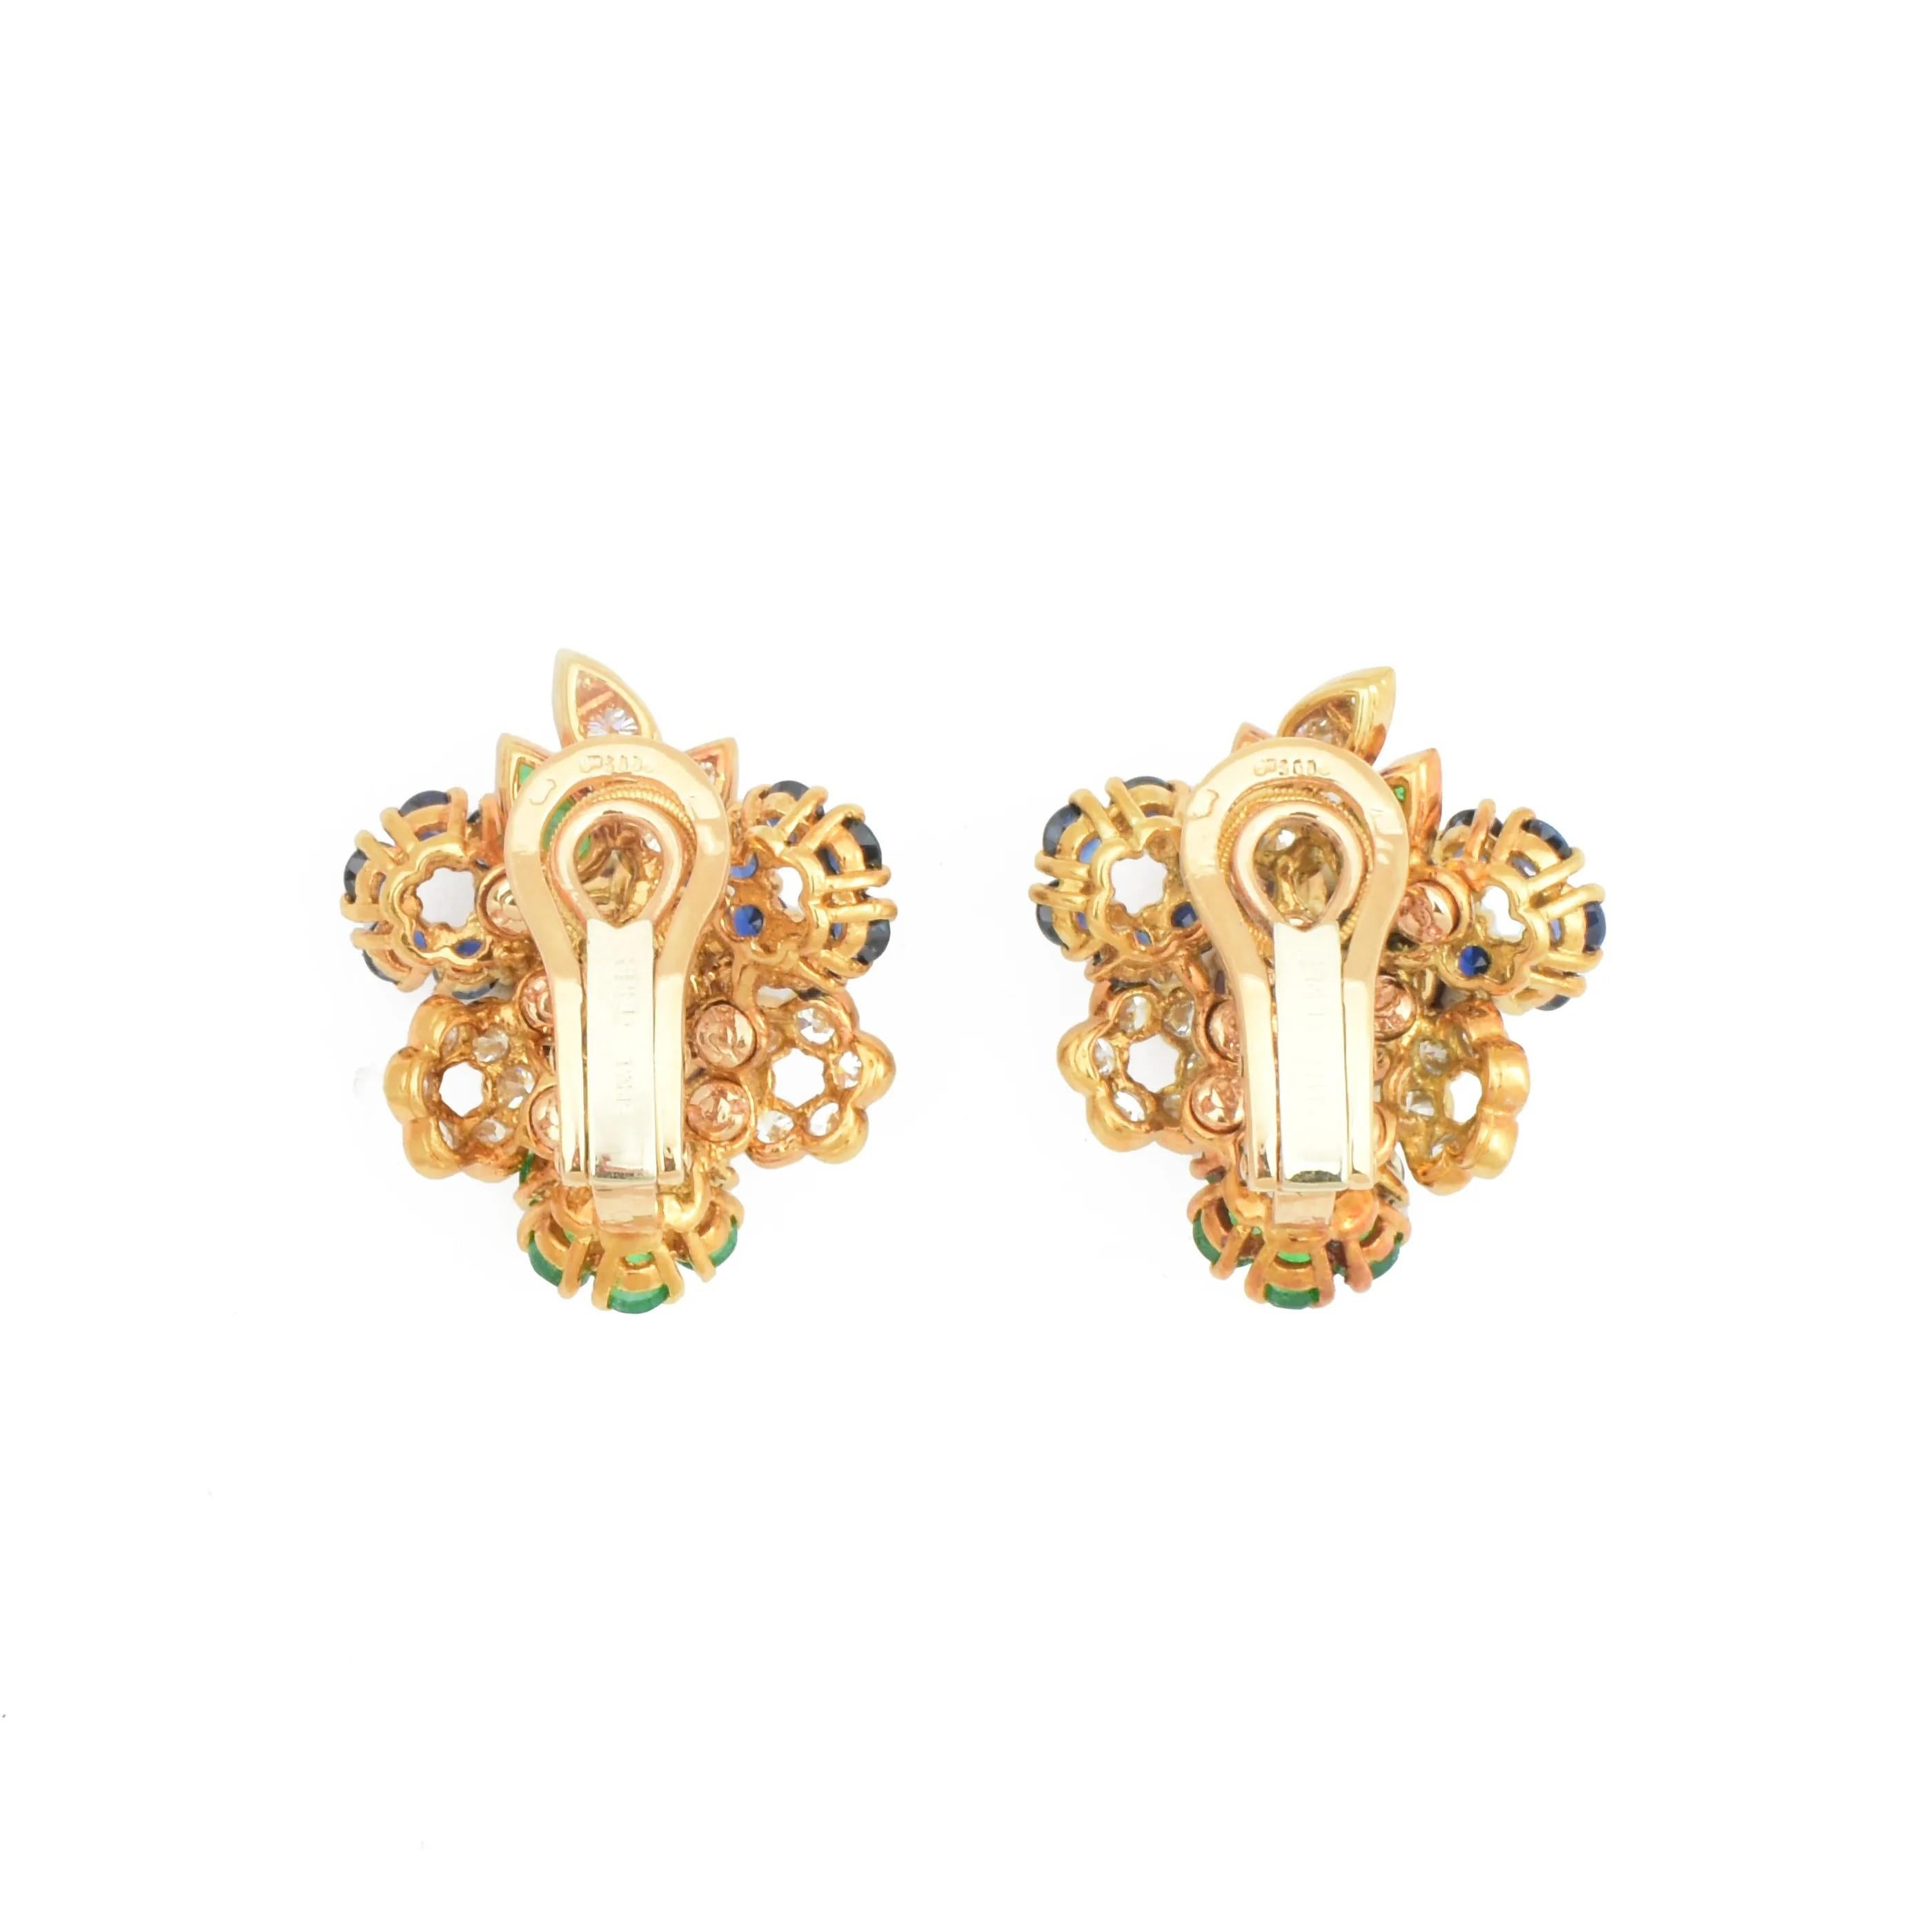 Ein atemberaubendes Paar bunte Clip-Ohrringe von Fred of Paris um 1970.

Die Modelle aus 18 Karat Gelbgold sind als stilisierte Blumensträuße gestaltet.

Besetzt mit feinen natürlichen Rubinen, Saphiren, Smaragden und Diamanten, komplett mit